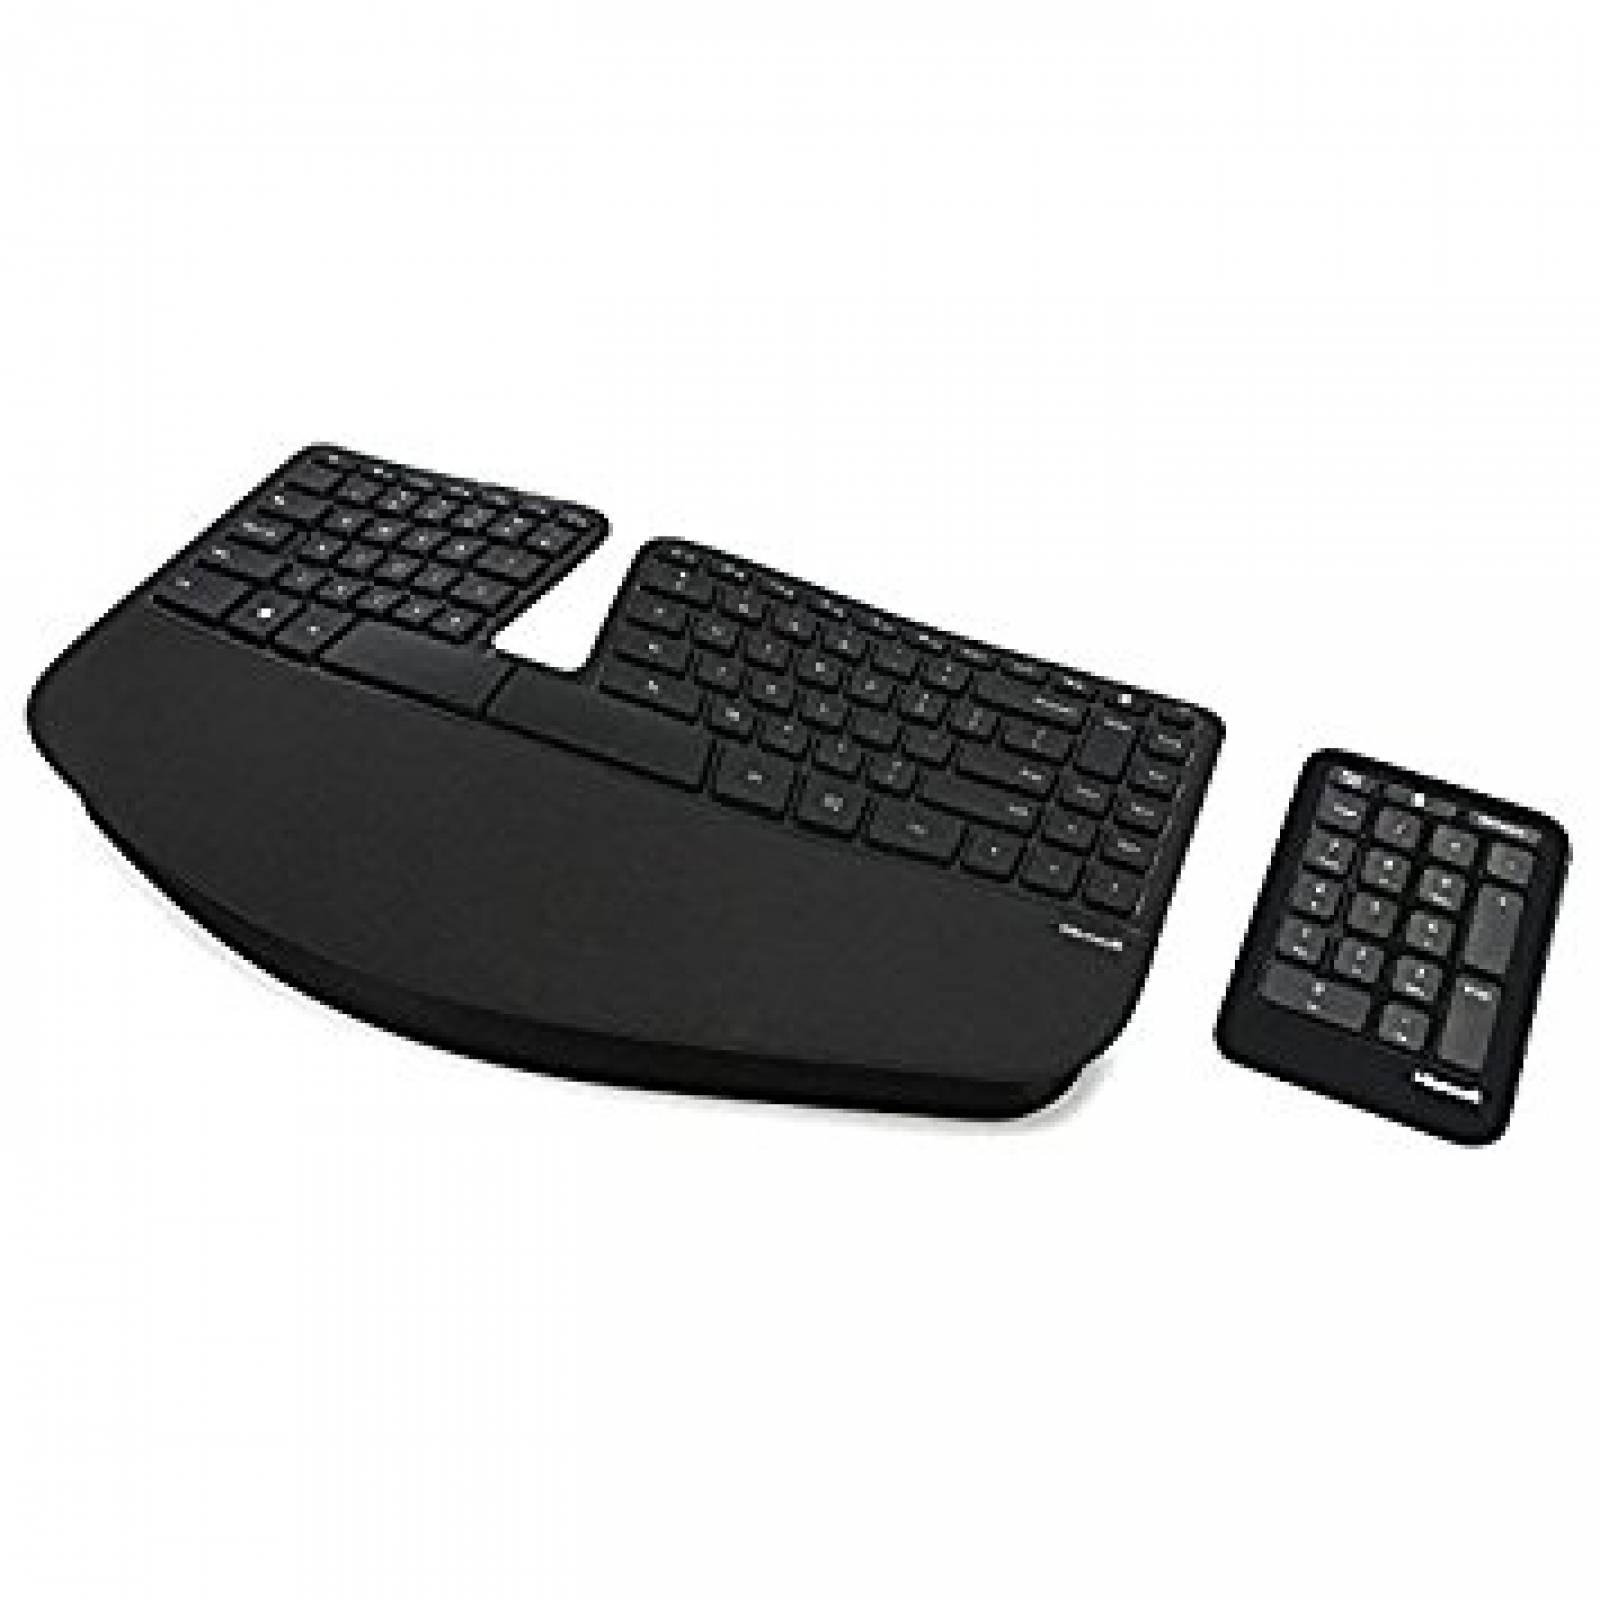 B:Microsoft esculpir teclado ergonómico negocio (5KV-00001)